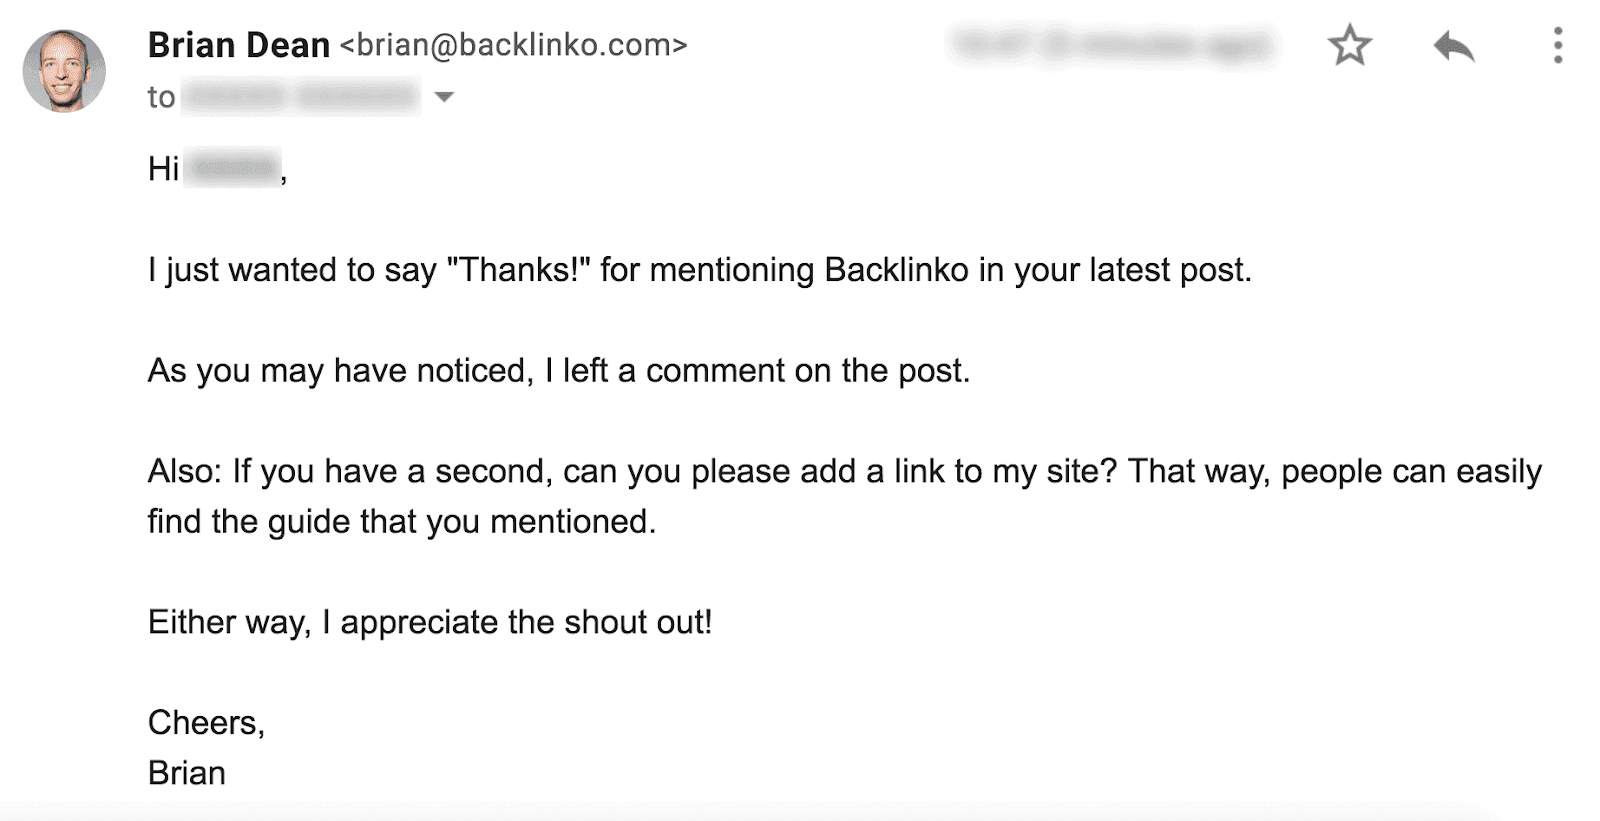 Asking for a backlink